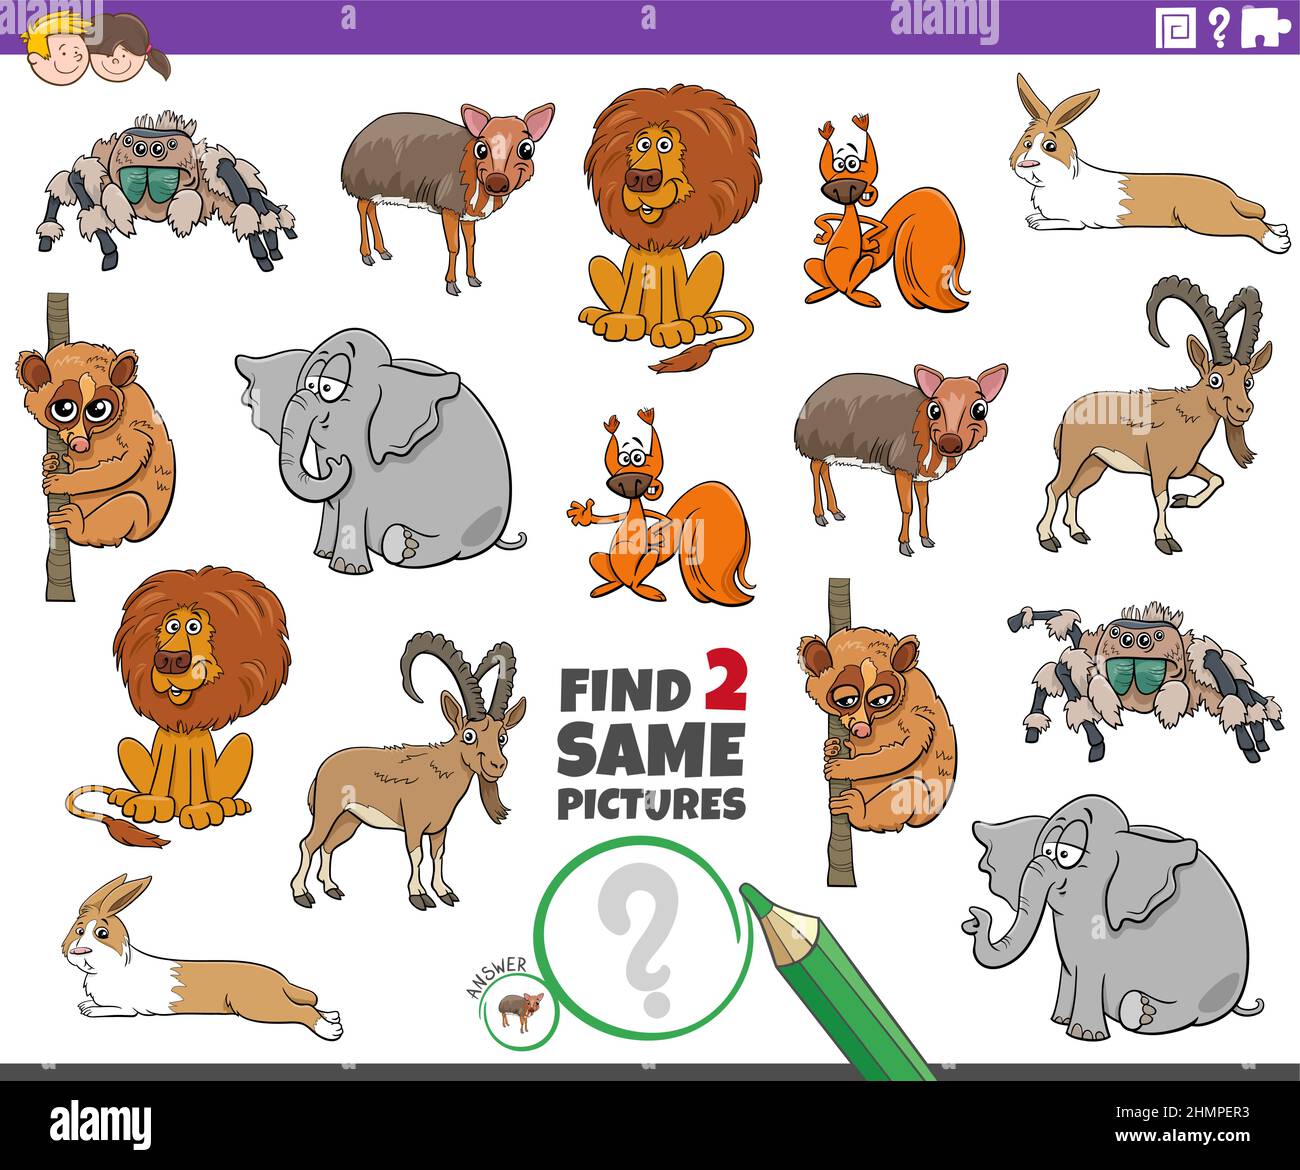 Illustrazione del cartone animato di trovare due stesse immagini gioco educativo con personaggi di animali fumetti Illustrazione Vettoriale